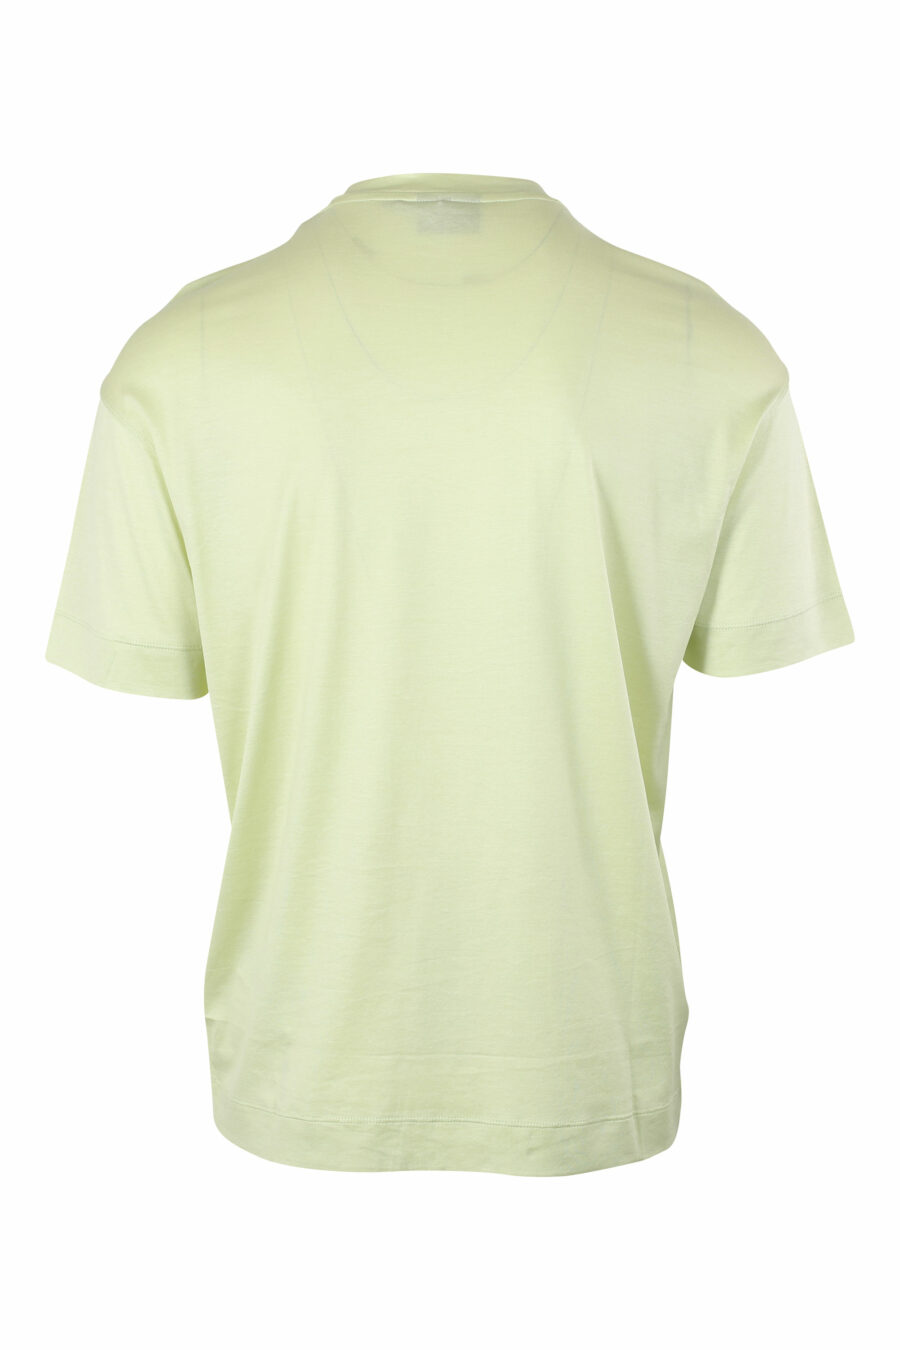 Camiseta verde con maxilogo centrado - IMG 9630